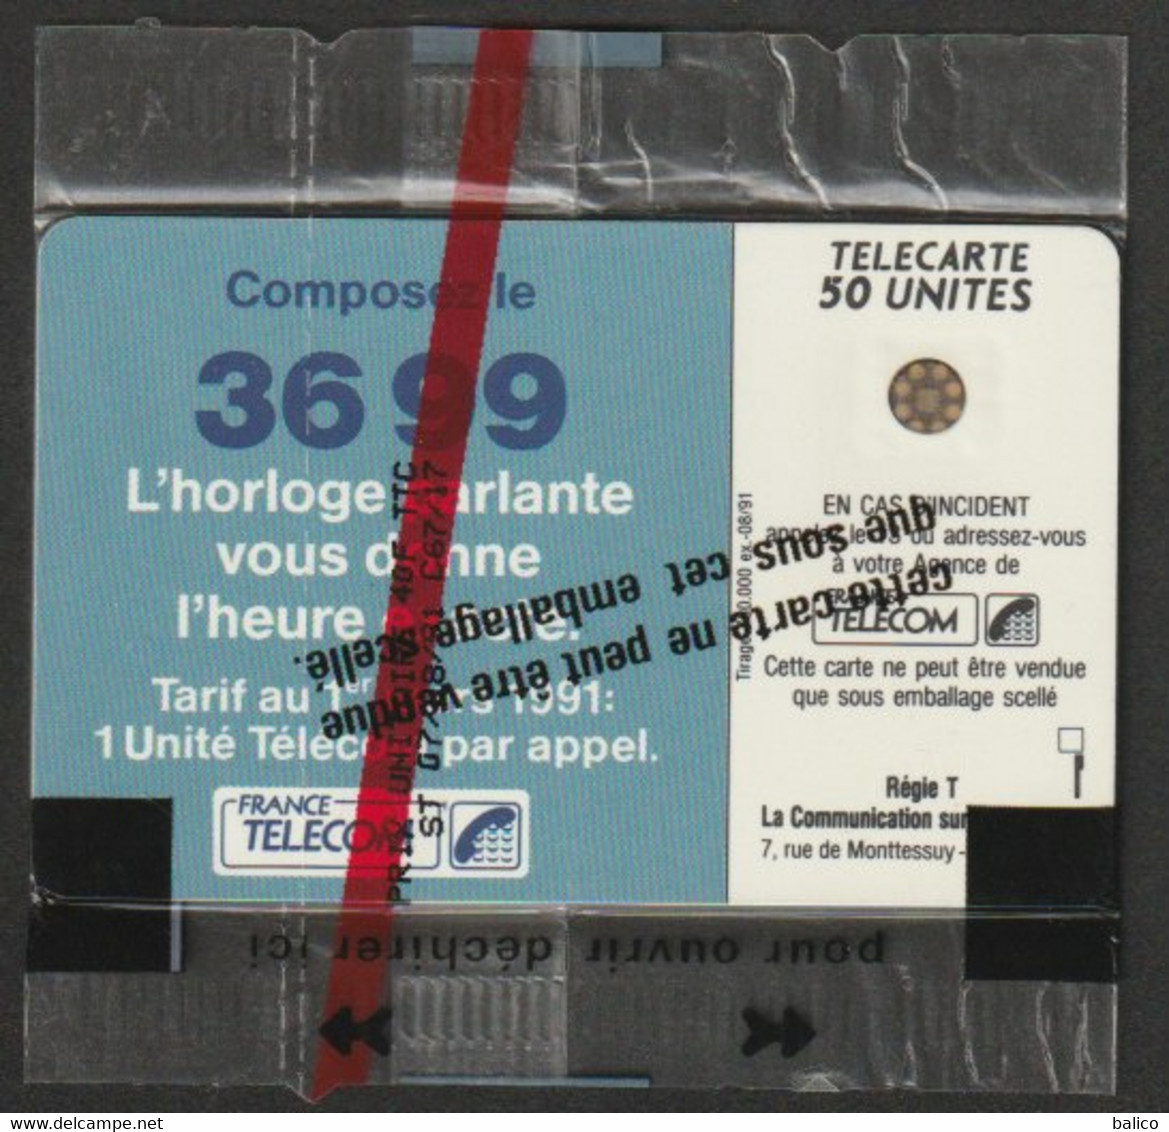 1991 - Horloge Parlante - 50 unités SC42 - Neuve sous Blister - Réf, F175 -  Côte 12 € / argus 1999